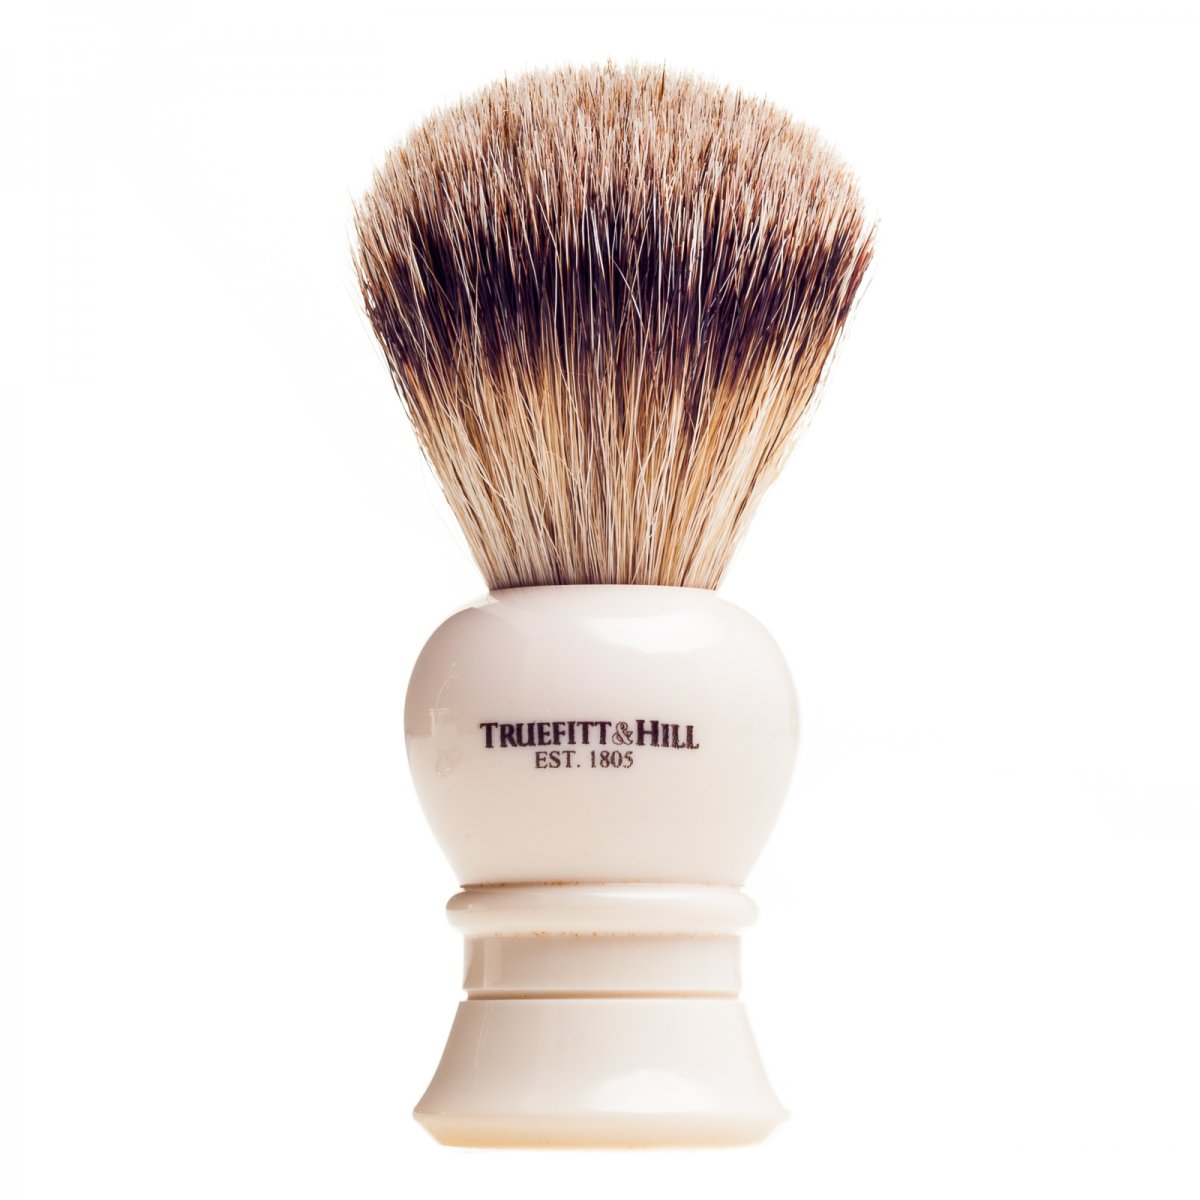 Truefitt & Hill Shaving Brush Regency Ivory Super Badger von Truefitt & Hill